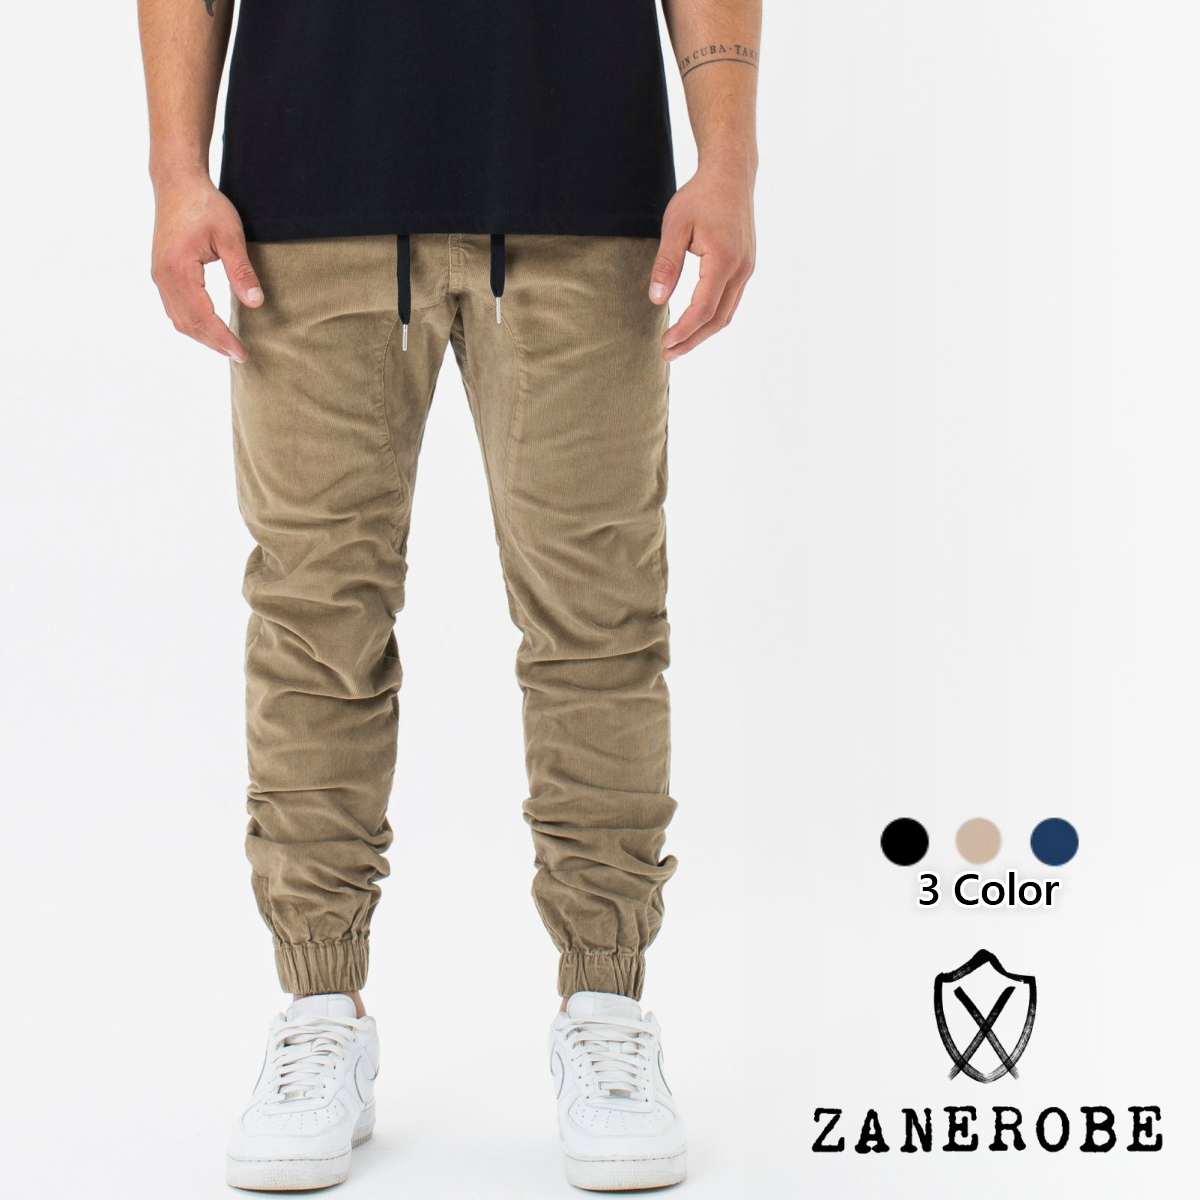 ZANEROBE ゼインローブ コーデュロイ ジョガーパンツ 3色 Sureshot Cord Jogger スウェット ブラック 黒 ベージュ  ネイビー メンズ[衣類] | s.s shop